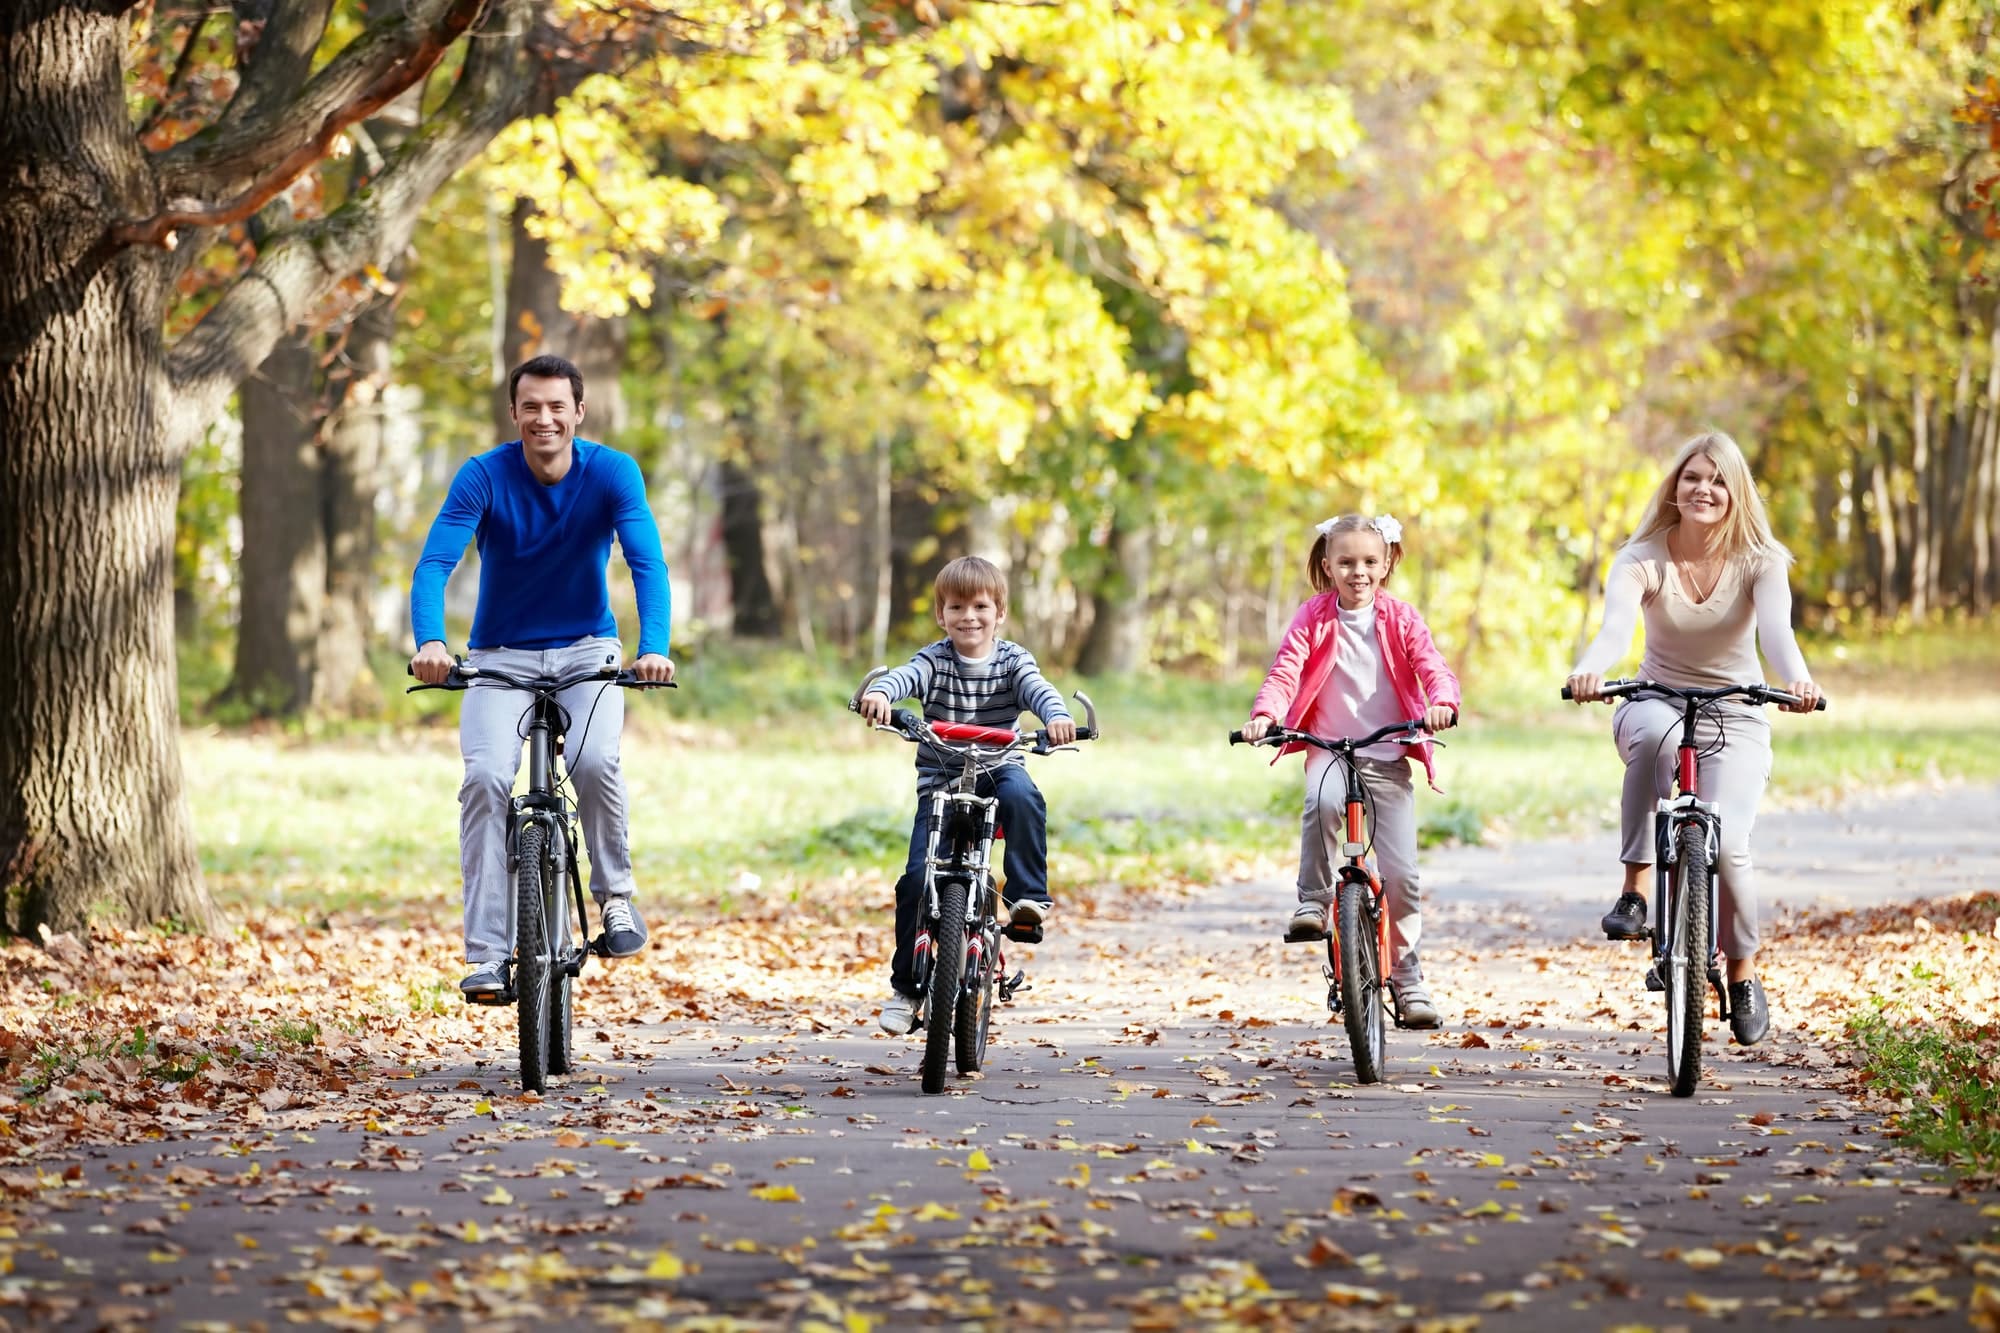 Comment entretenir et maintenir la bicyclette d’un enfant en bon état ?